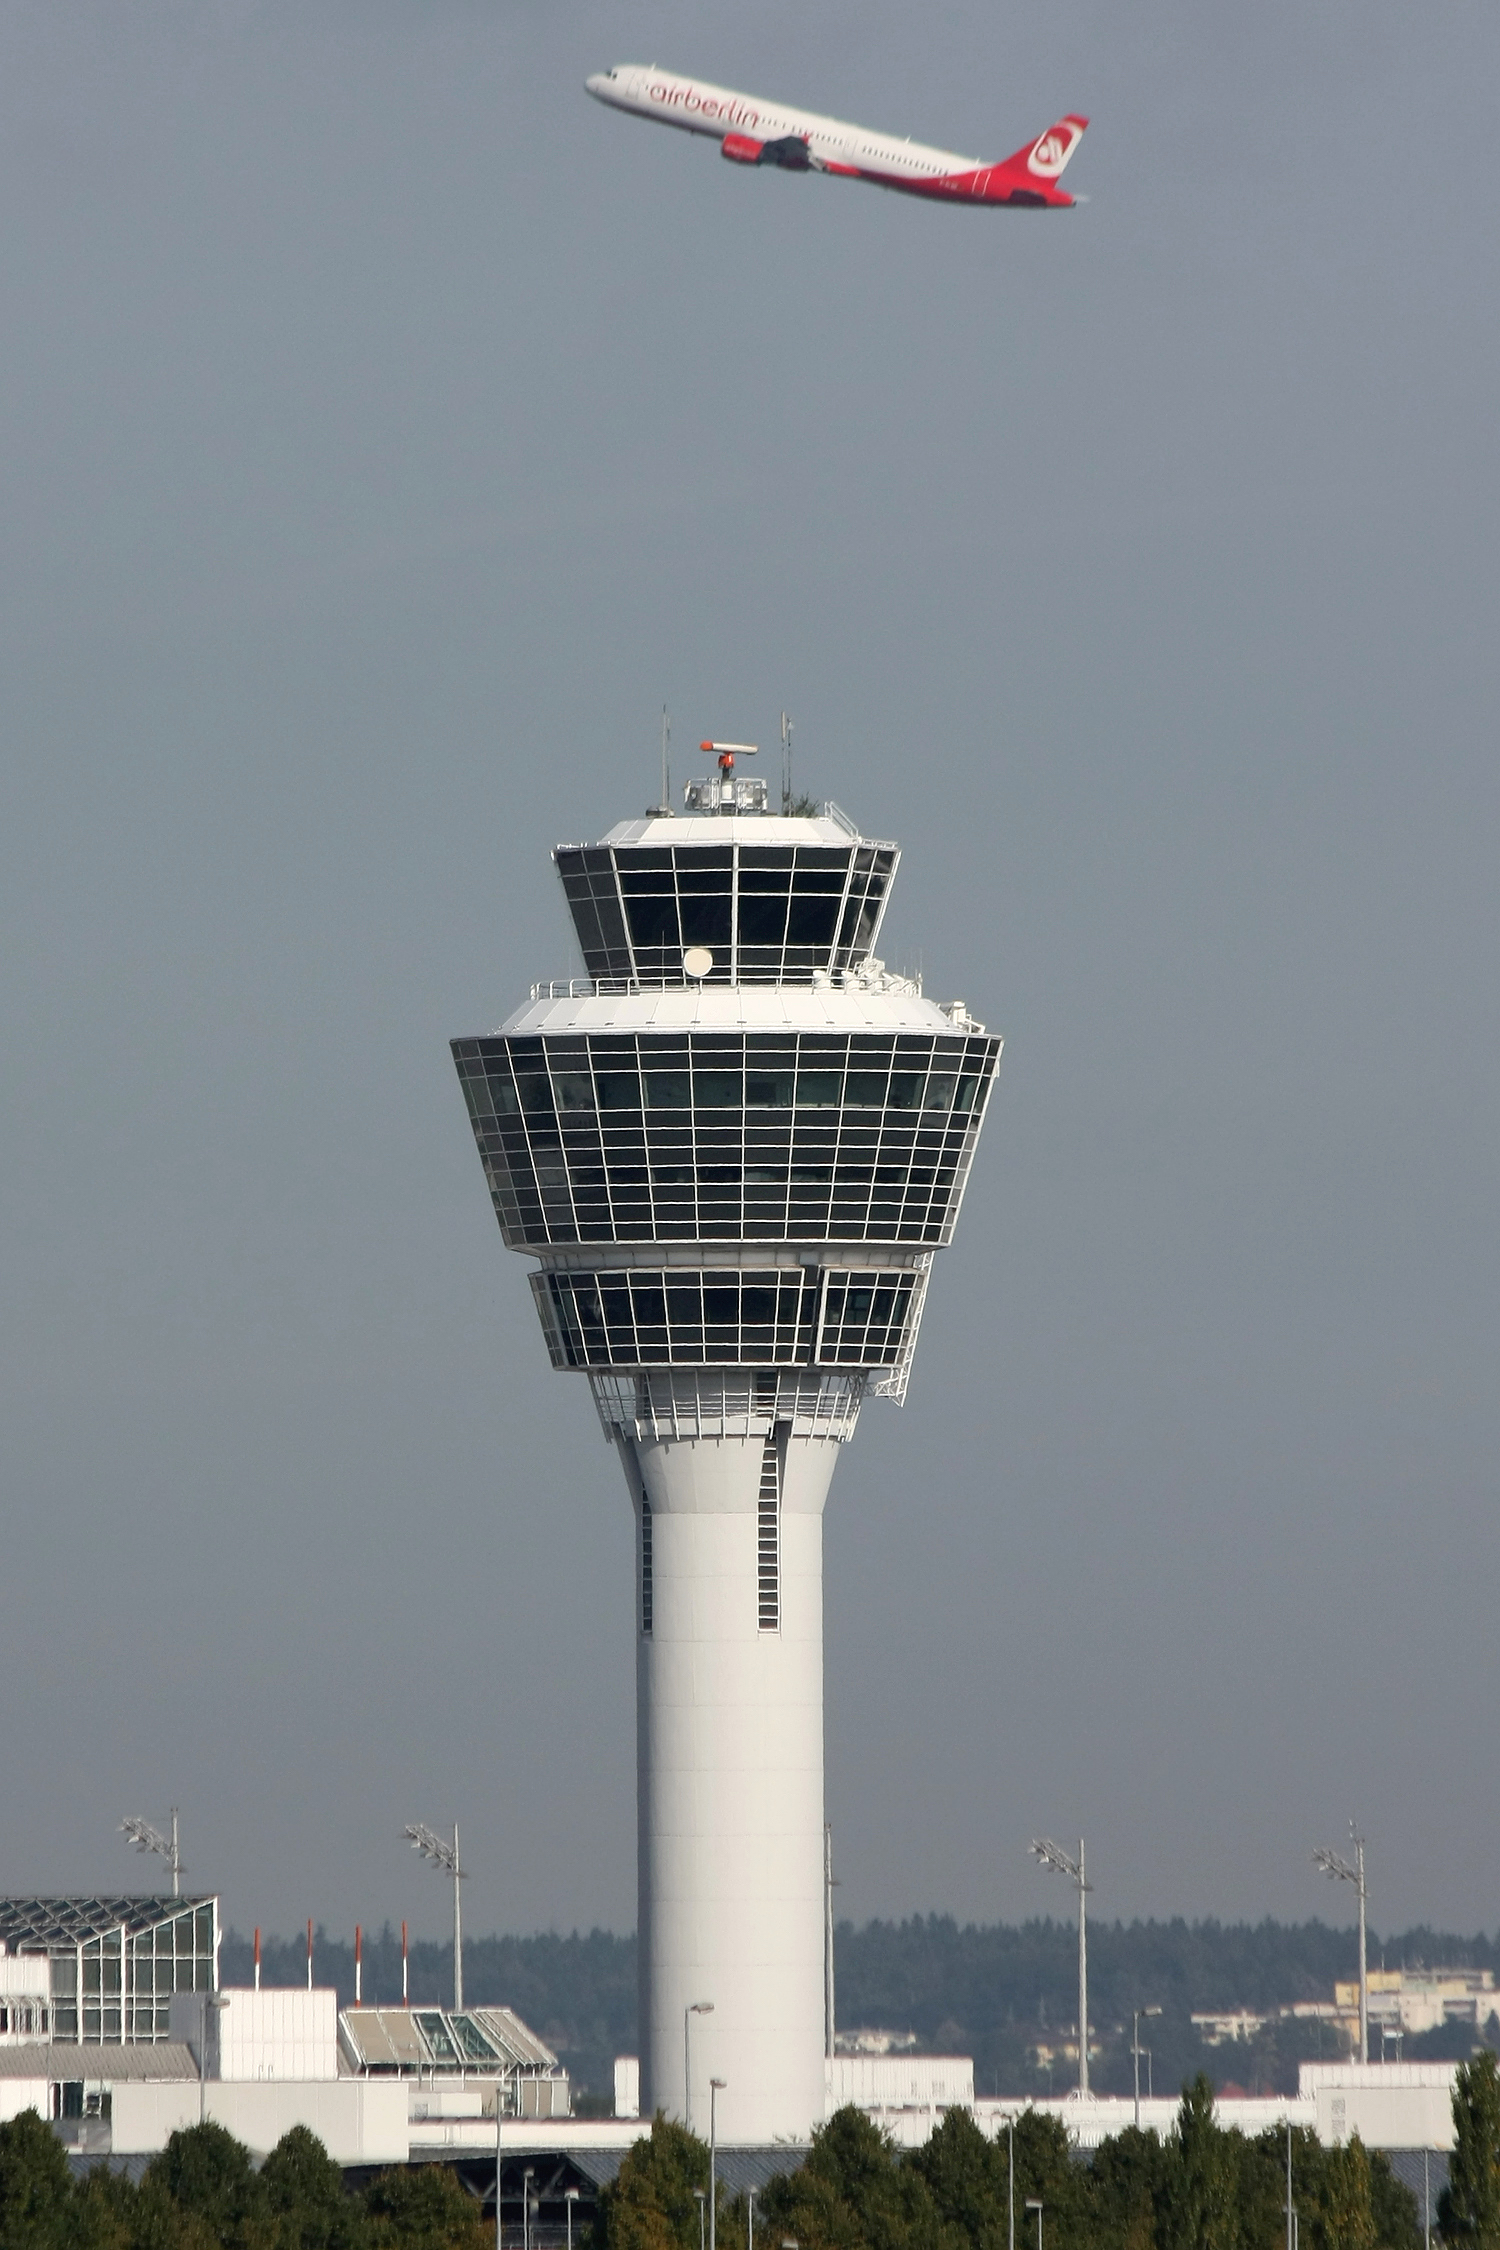 Fotografía de una torre de control de tráfico aéreo y de un avión después de haber despegado.